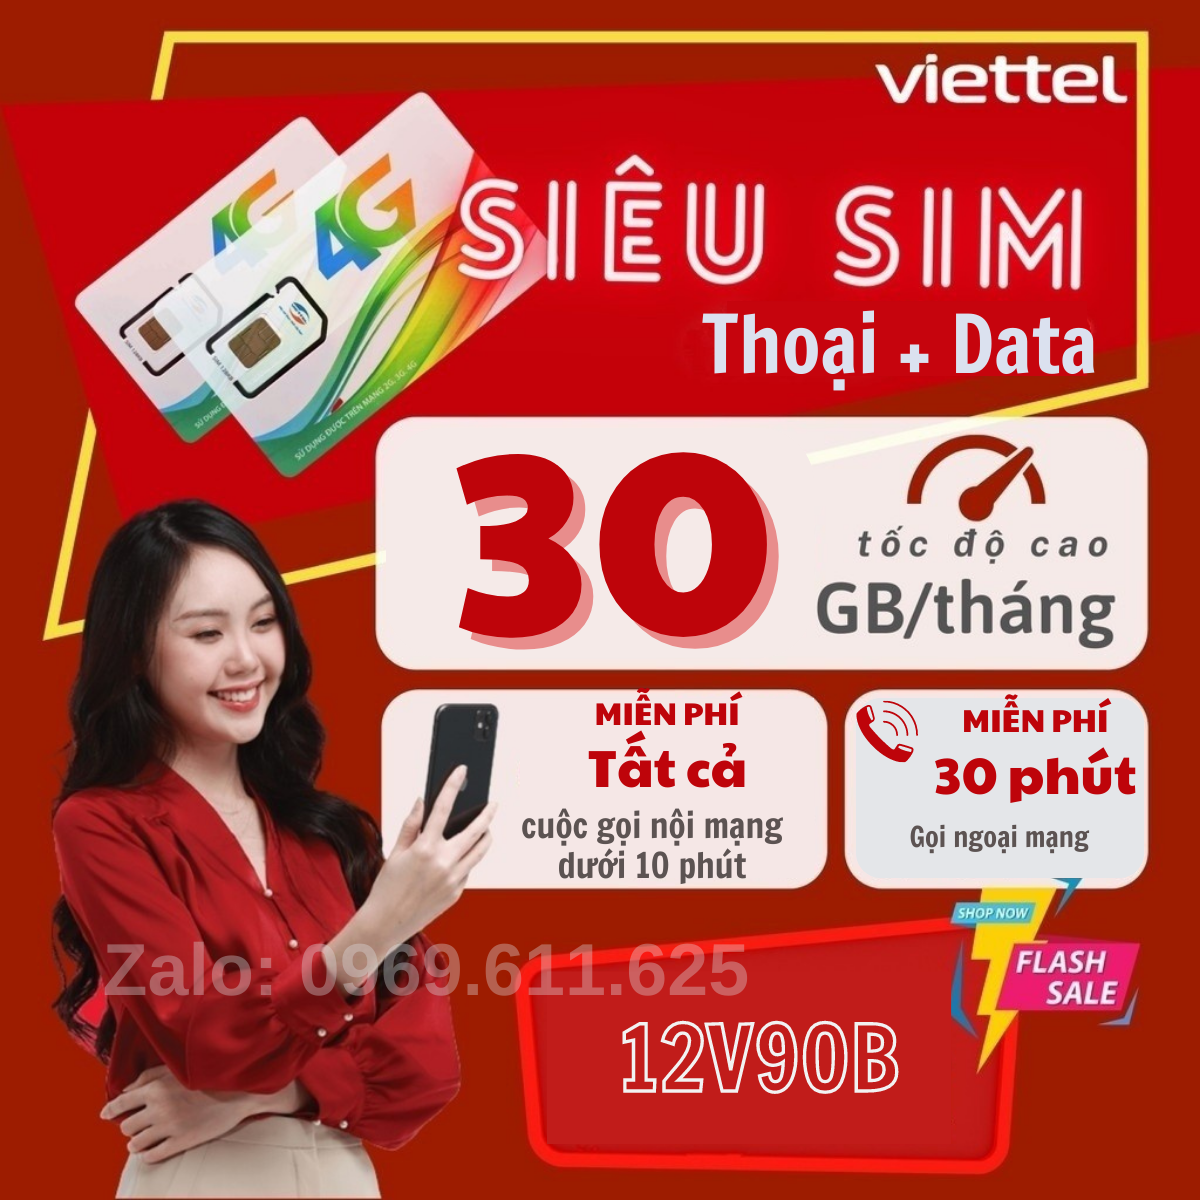 ( HOT TREND ) Sim 4g Viettel 4G 12V90B Sim Data hỗ trợ 1GB/ngày - Miễn phí nội mạng ngoại mạng . Trọn Gói 1 Năm Không nạp Tiền .FREESHIP - CHƯA KÍCH HOẠT